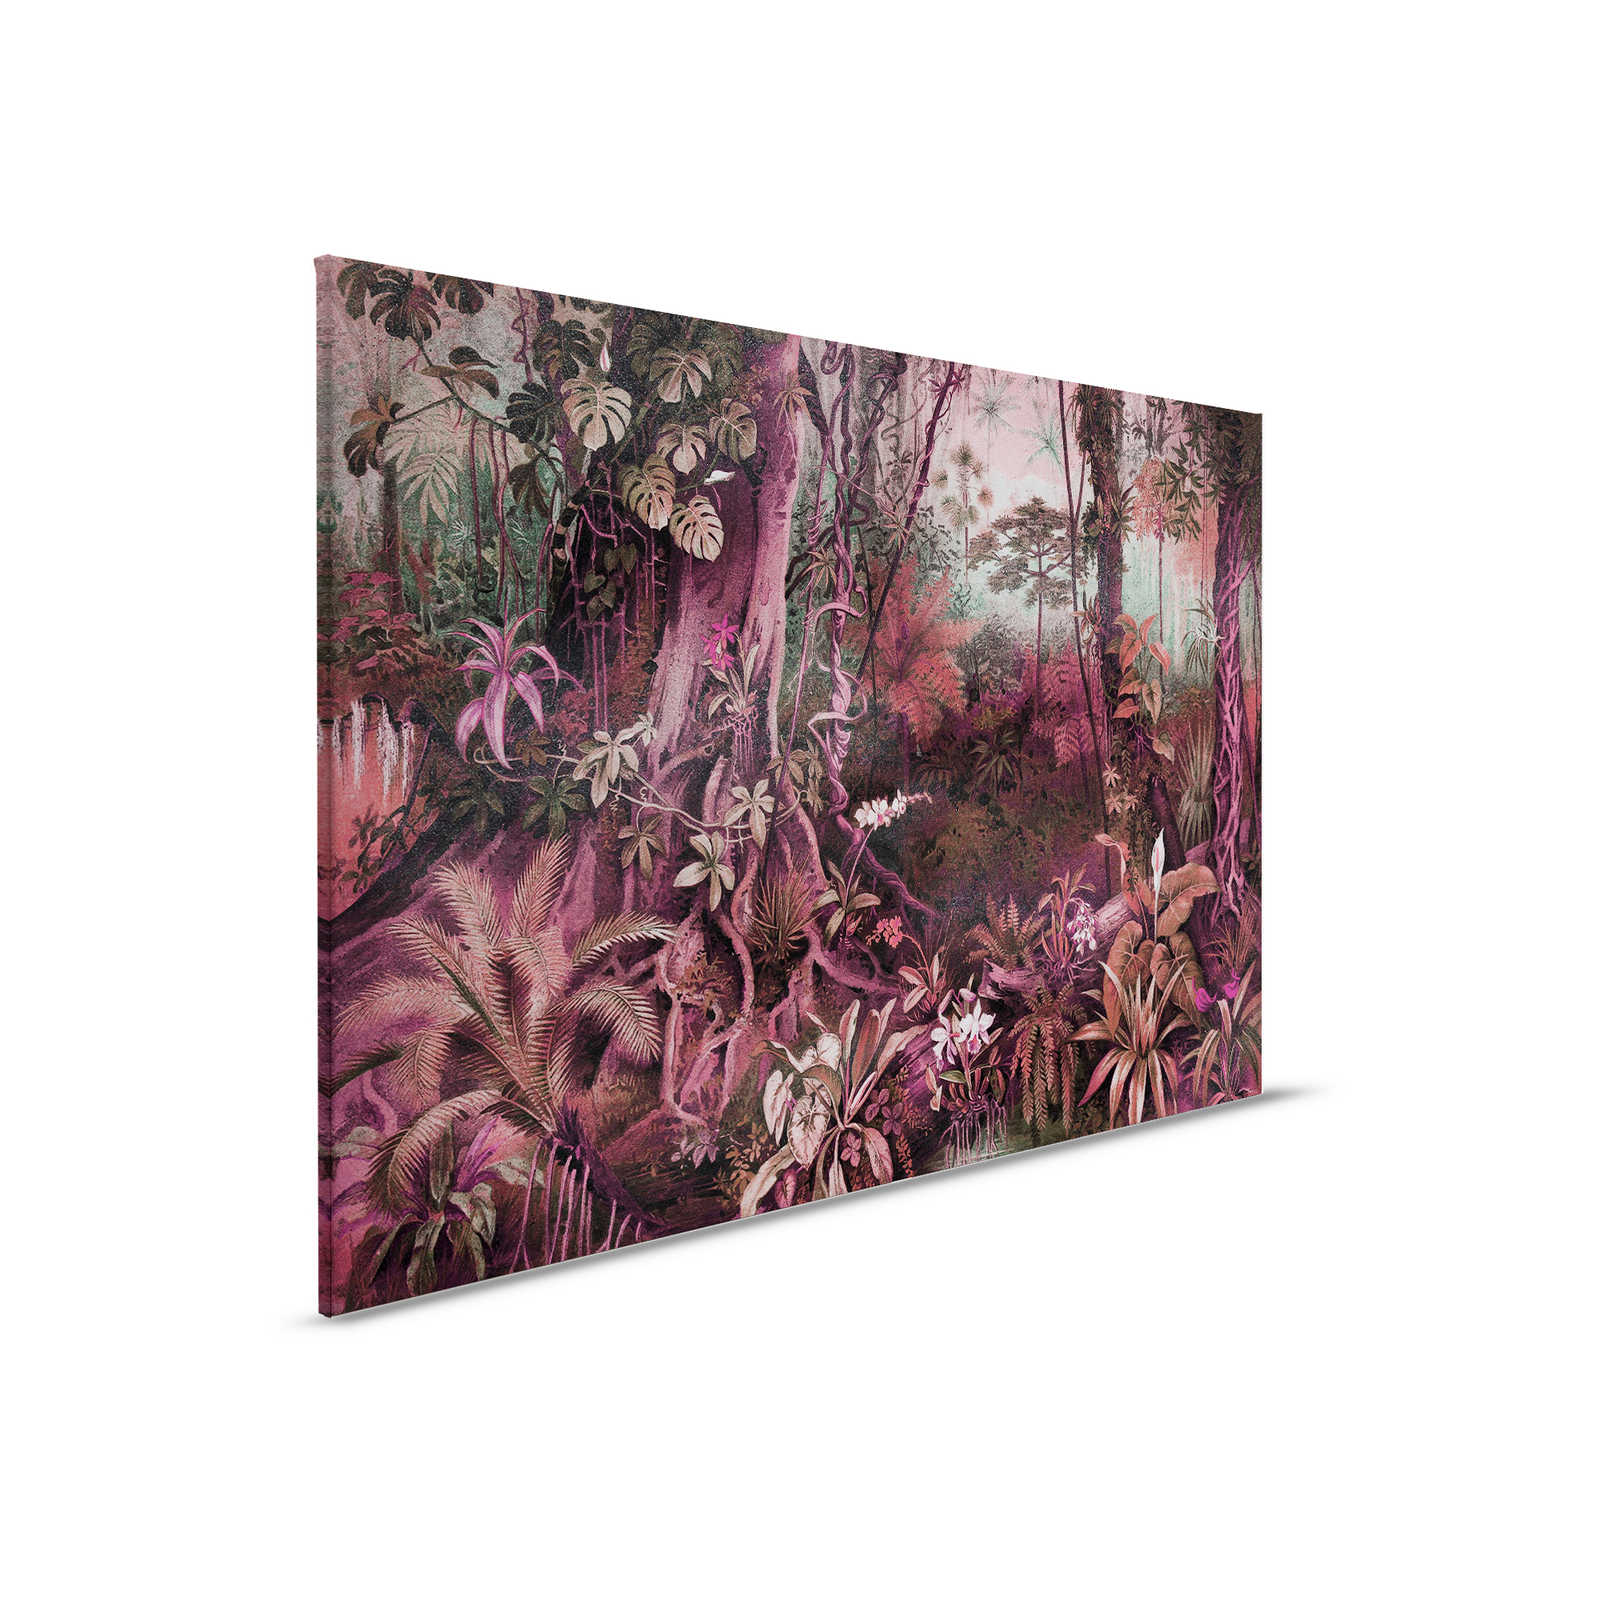 Dschungel Leinwandbild im Zeichenstil | lila, grün – 0,90 m x 0,60 m
